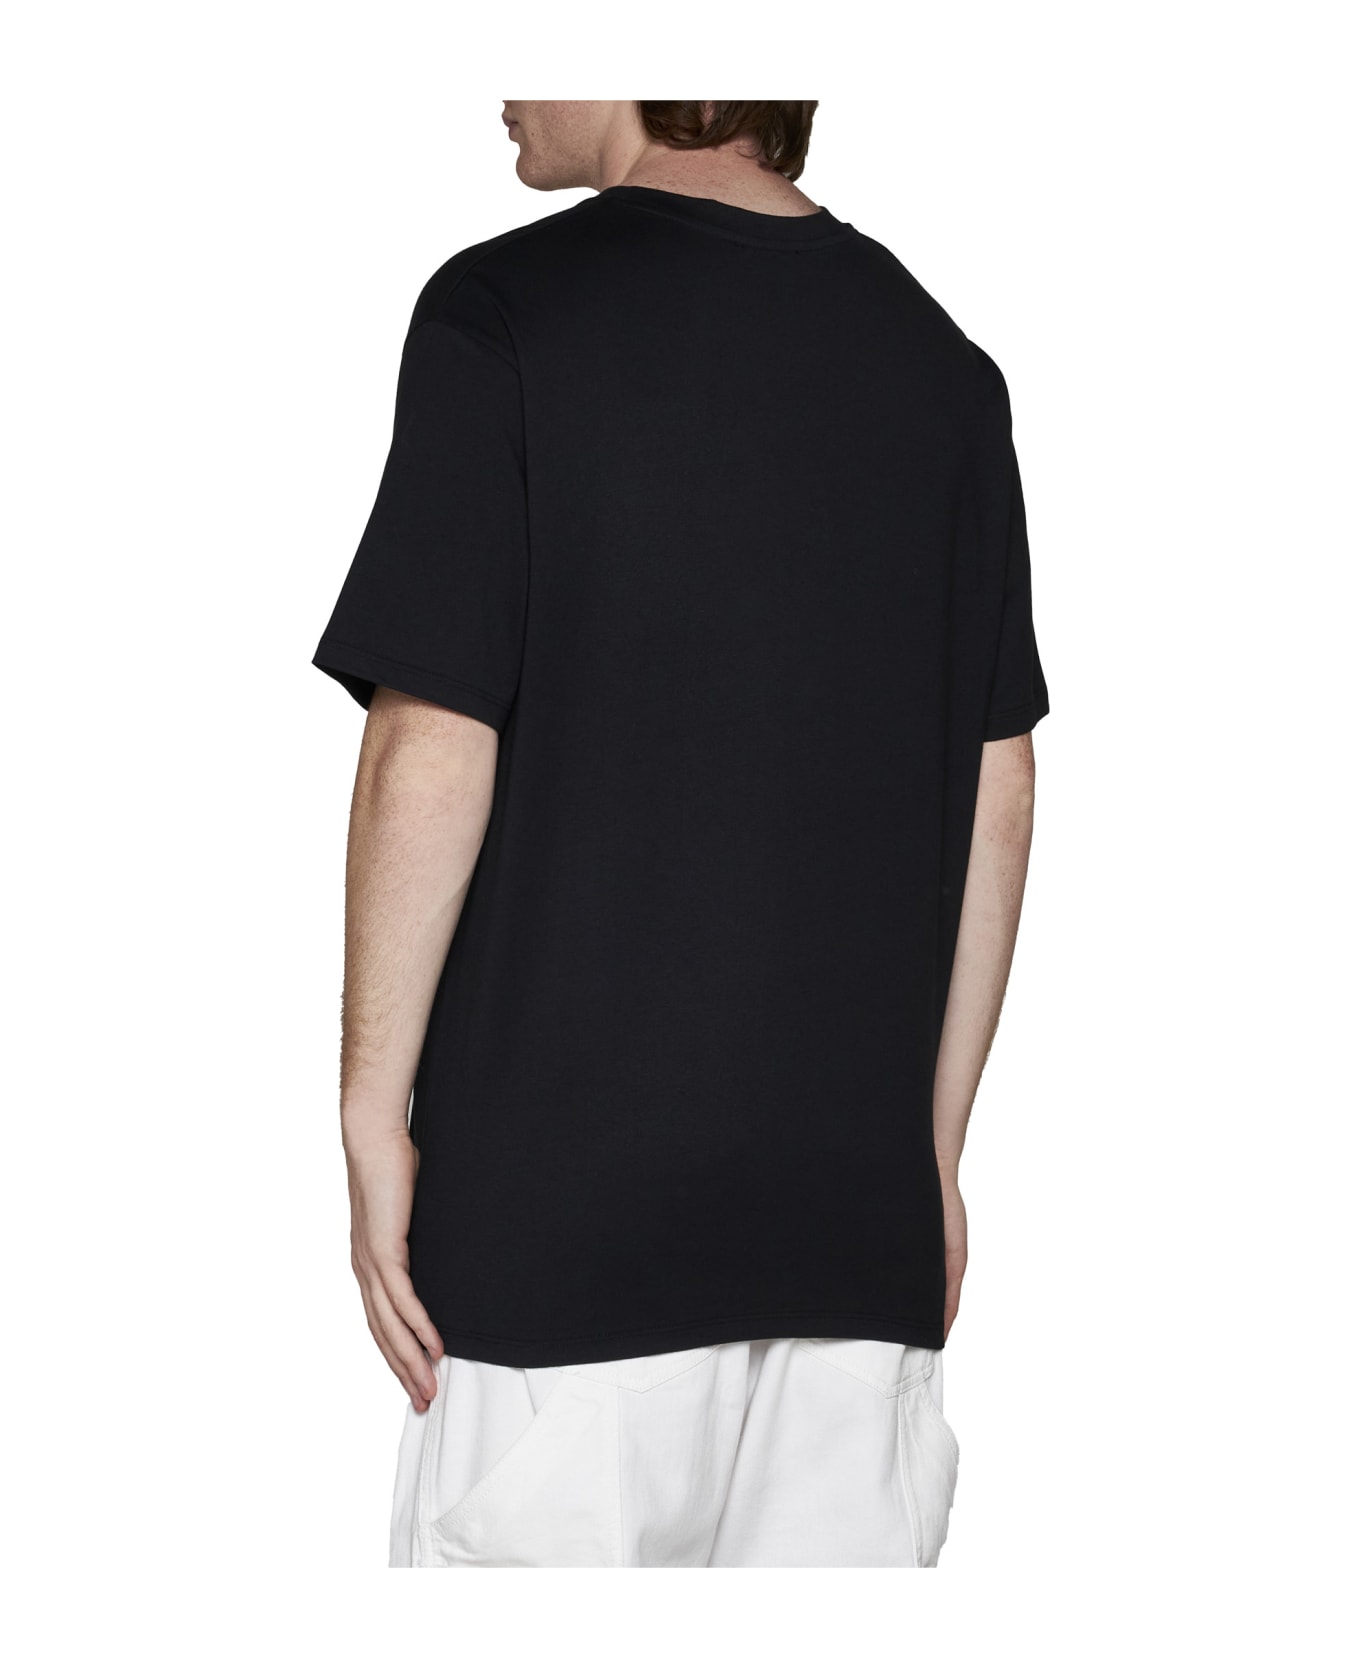 Balmain Star T-shirt - Eab Noir/blanc